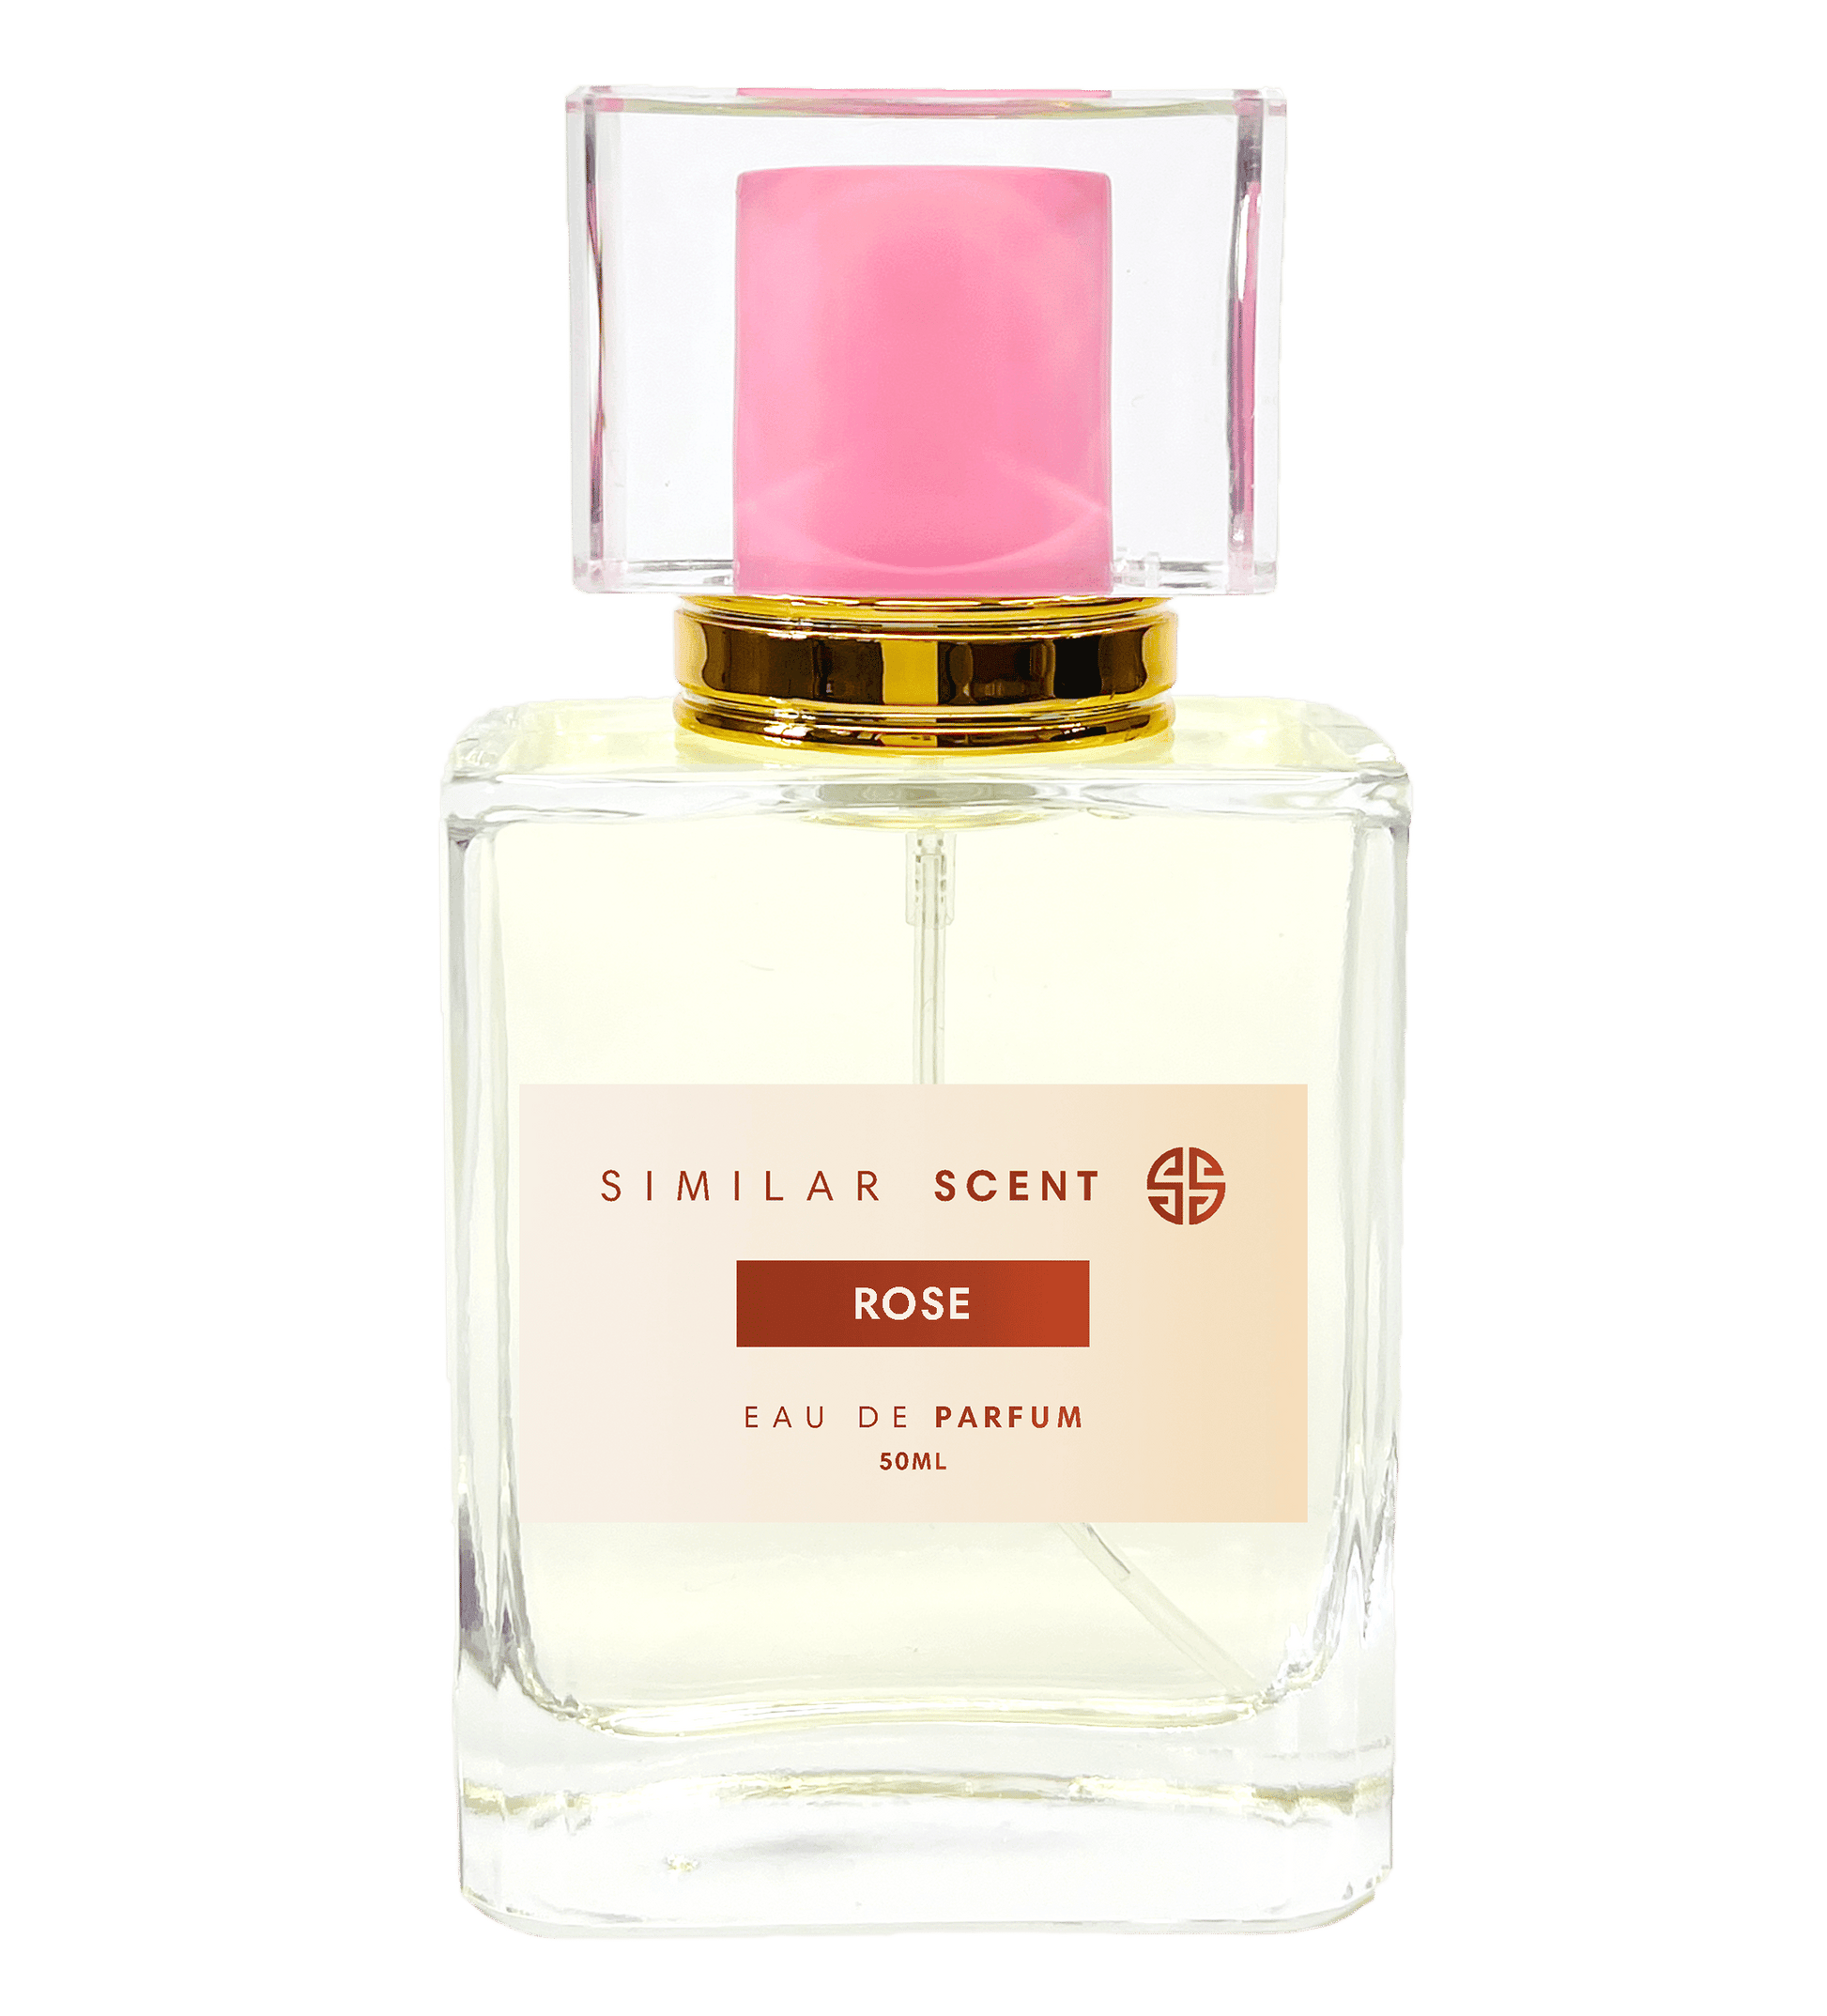 Rose Prick parfum - Similar Scent ROSE - undefined